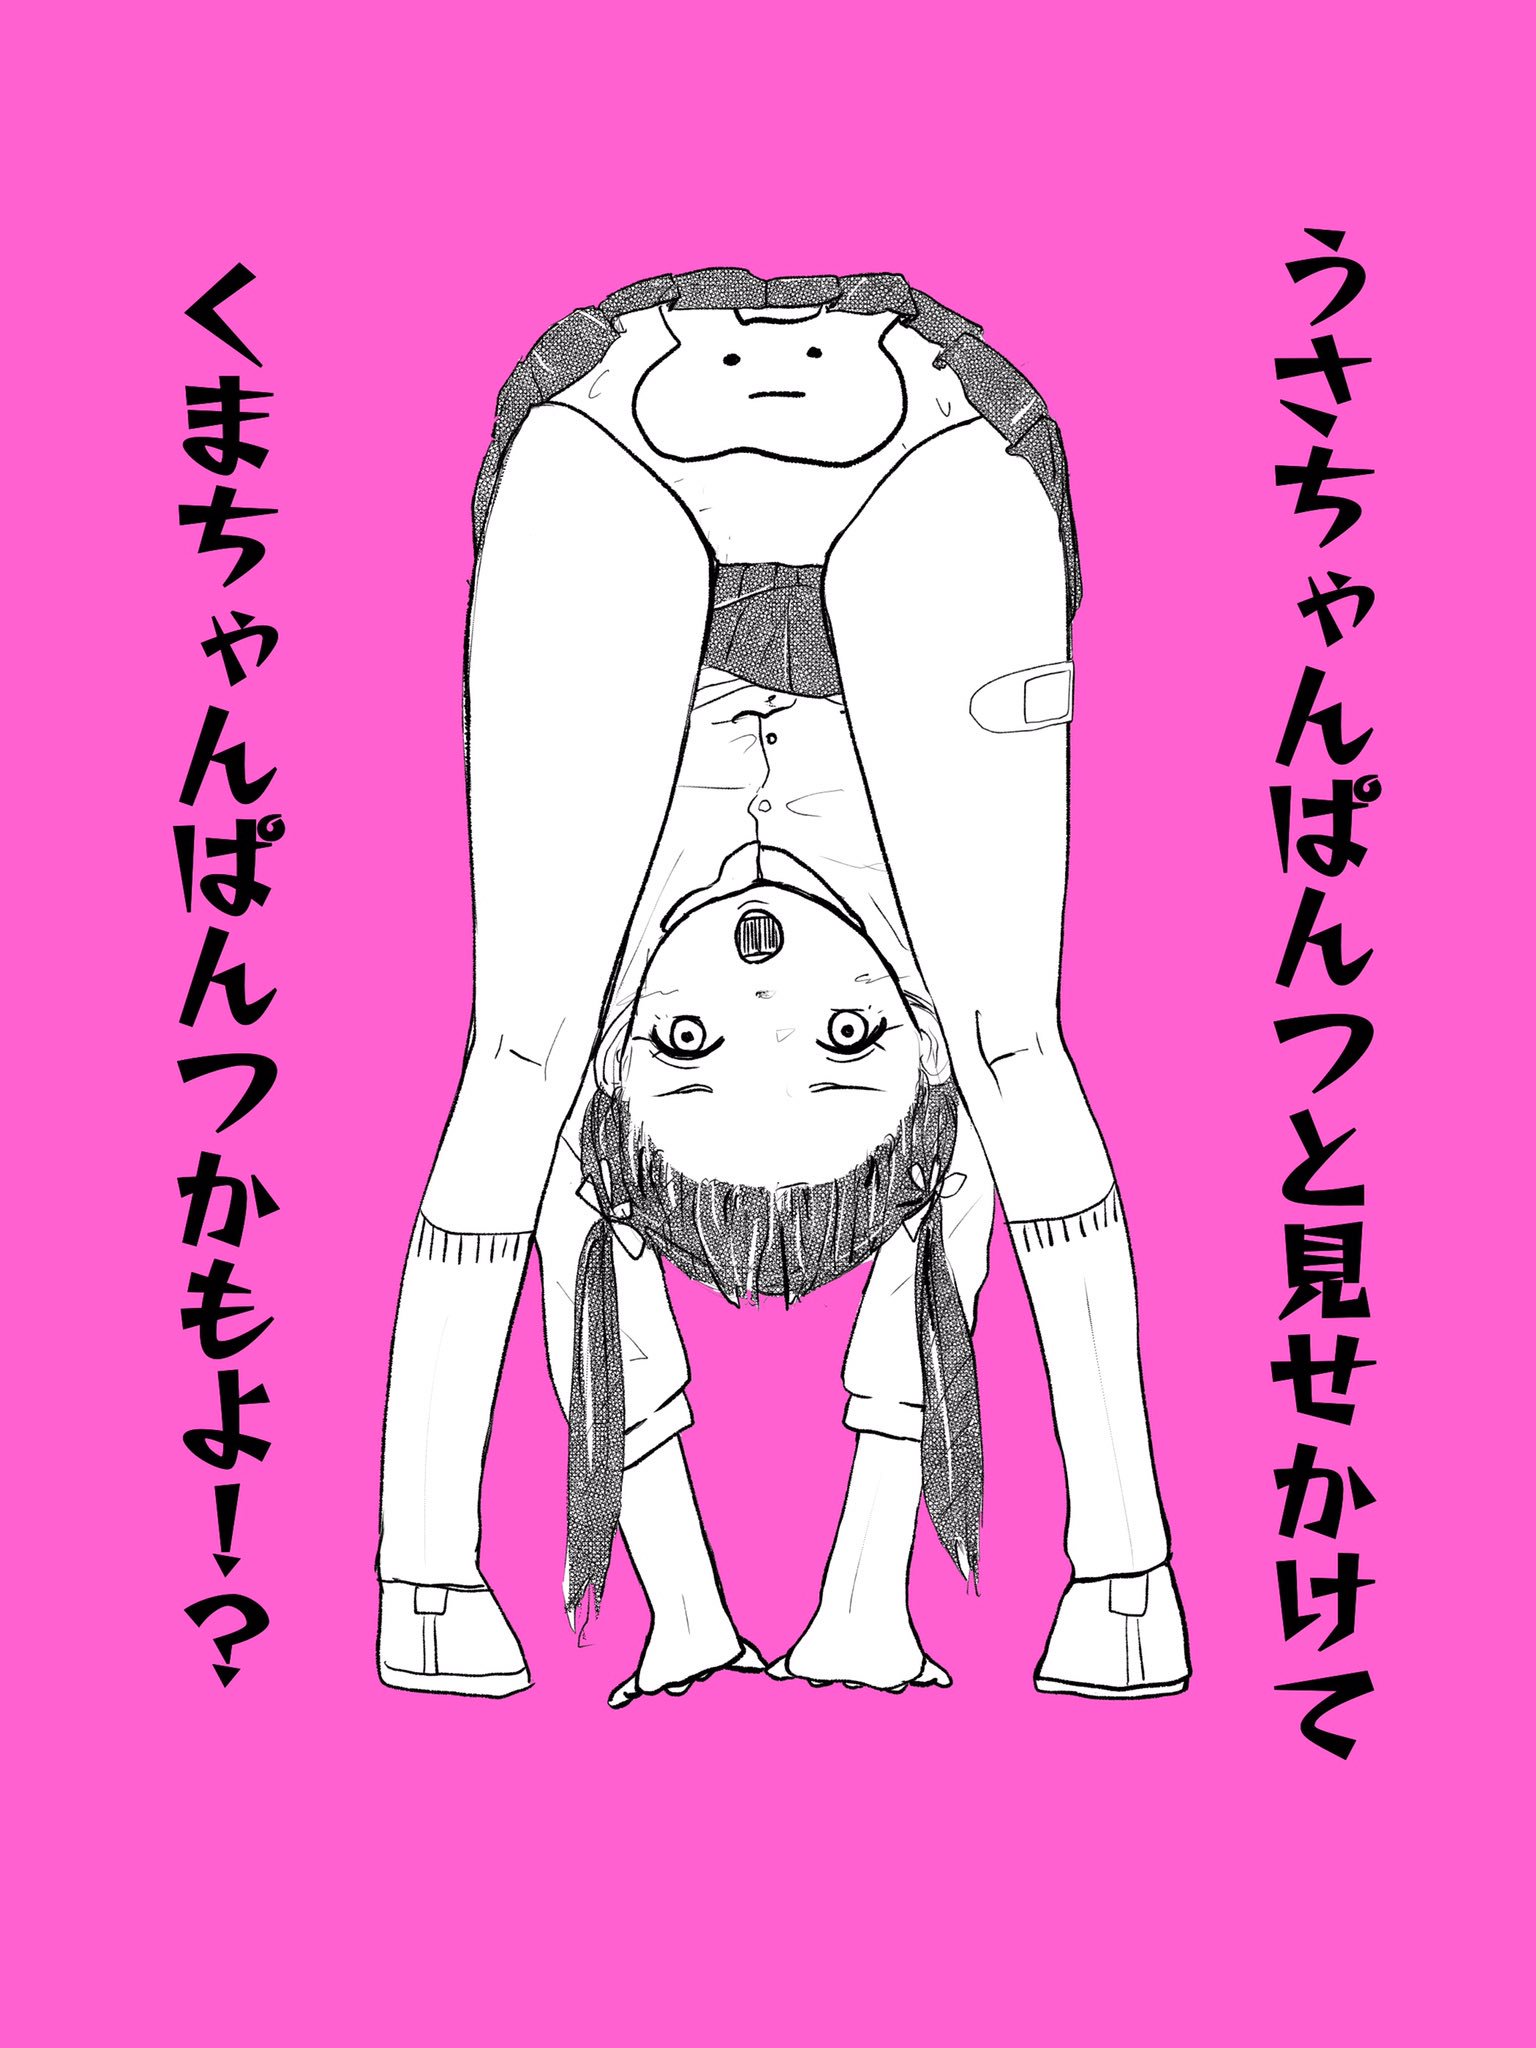 Misaki Misato : Drop | 三嵜みさと : drop